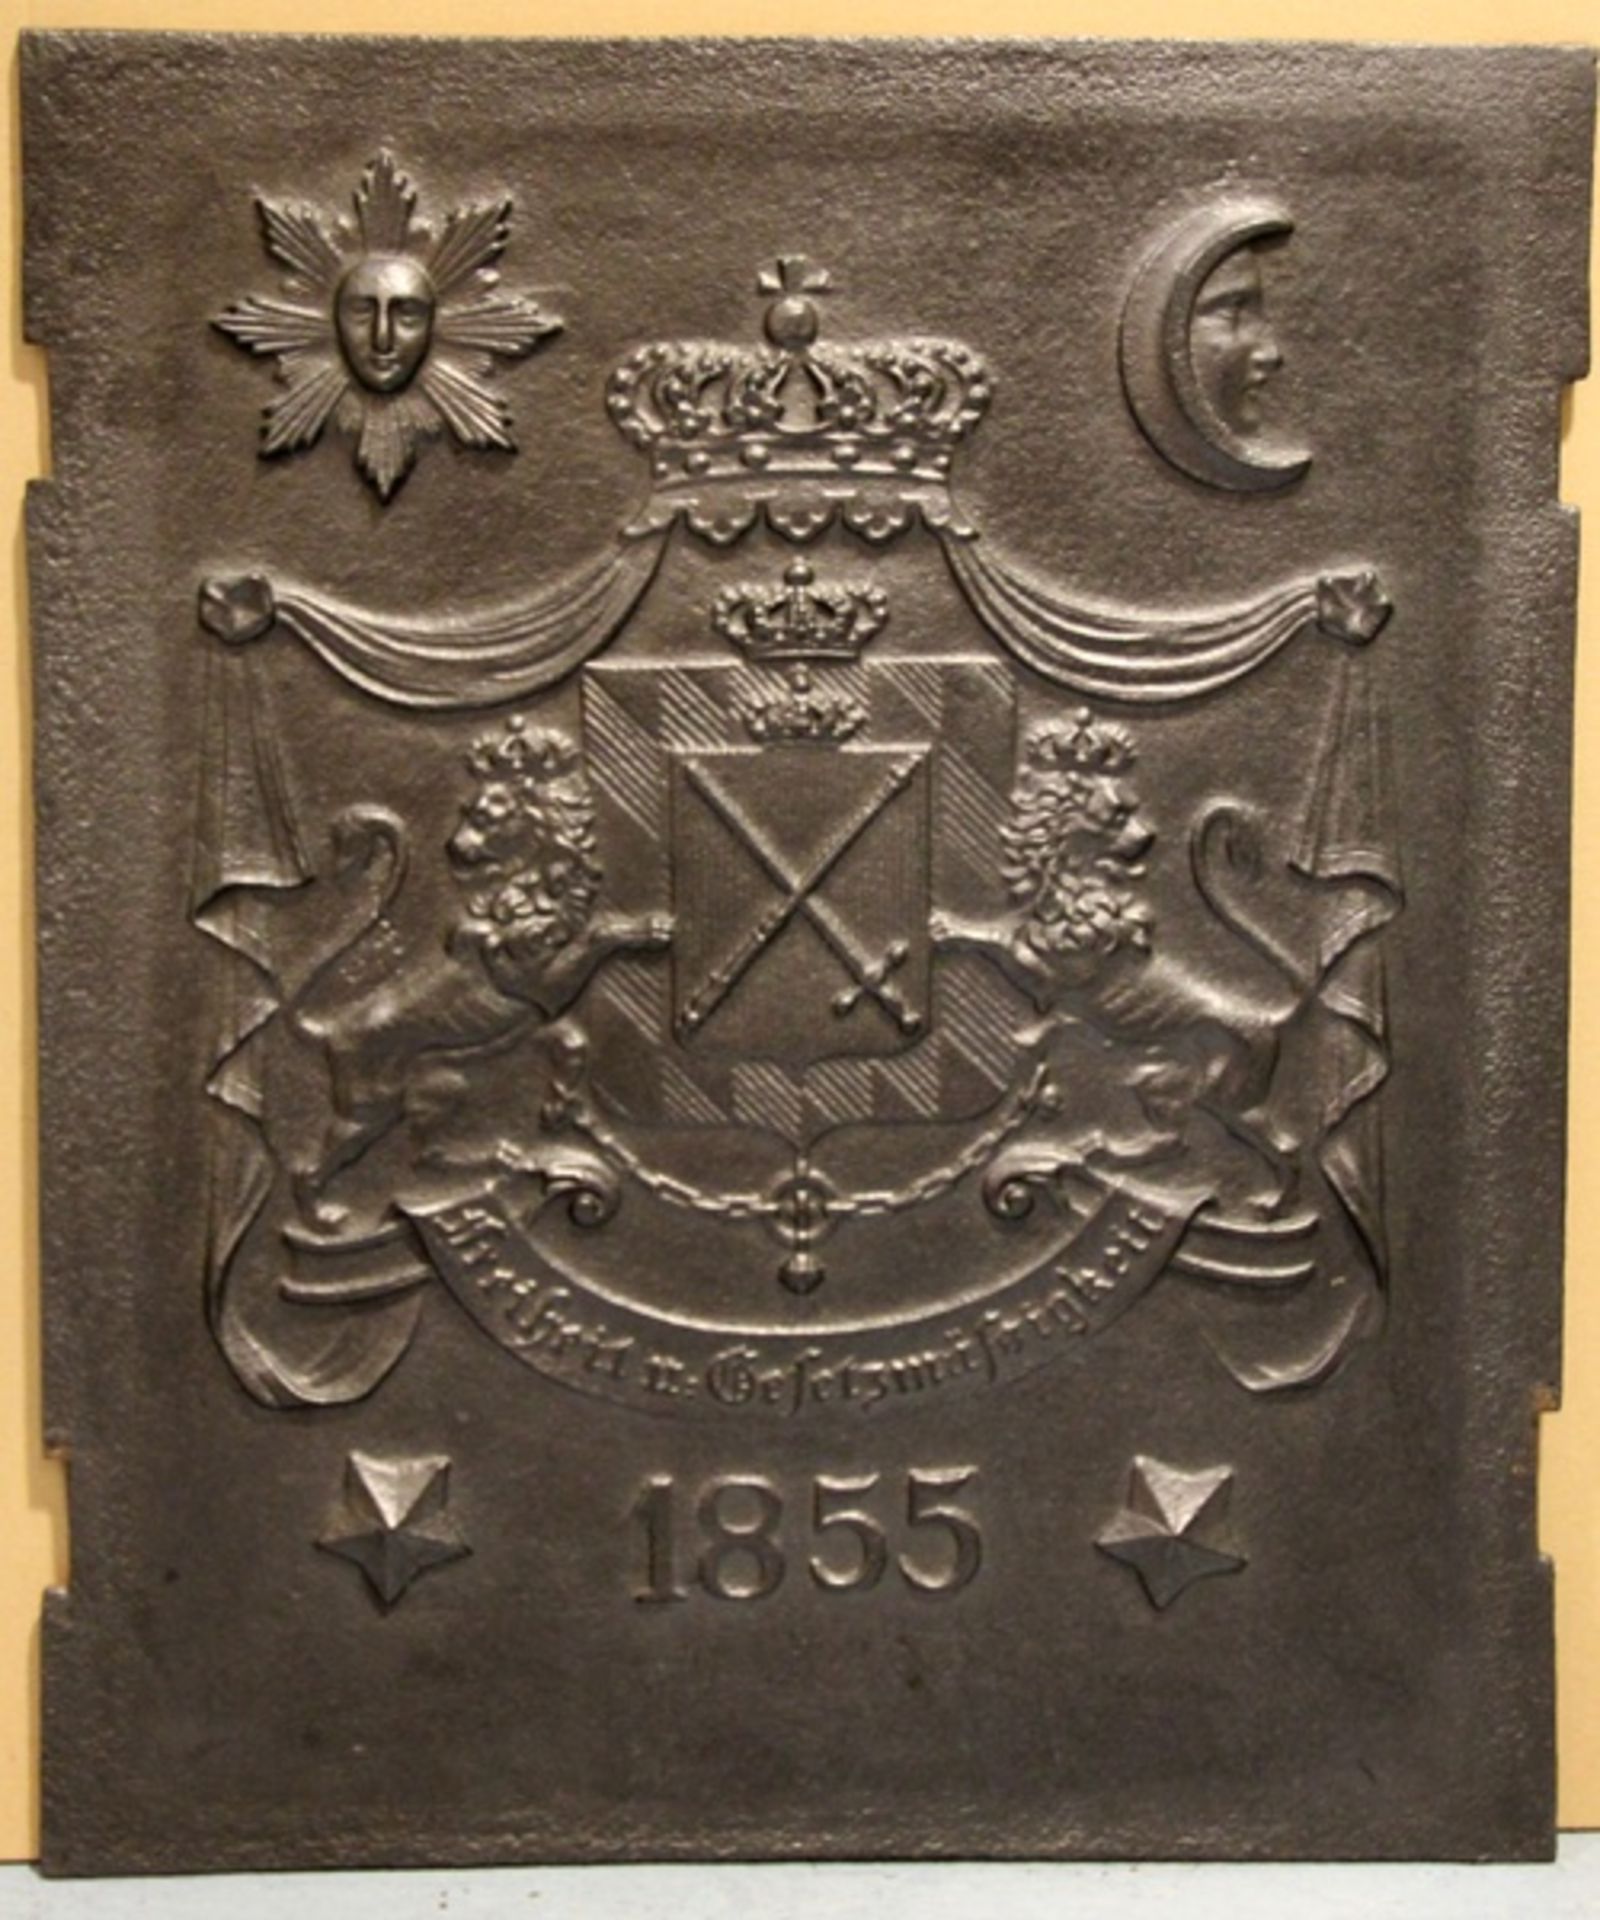 hreraldische Ofenplatte19. Jhd., Eisenguss, Ofenplatte mit Wappen Bayern unter Krone, seitl. 2